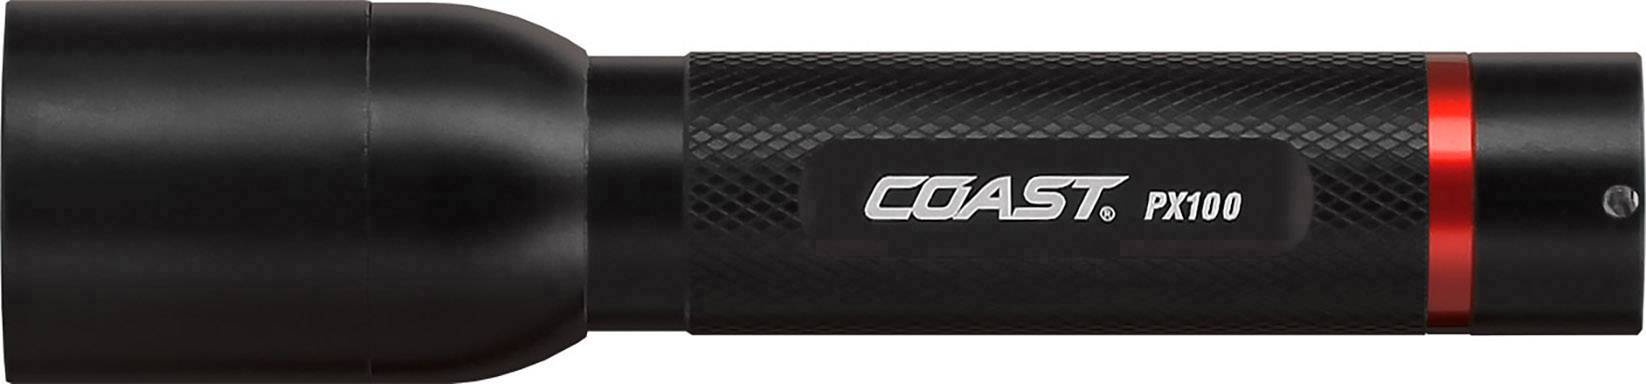 Coast PX100 UV LED Torch battery-powered g | Conrad.com